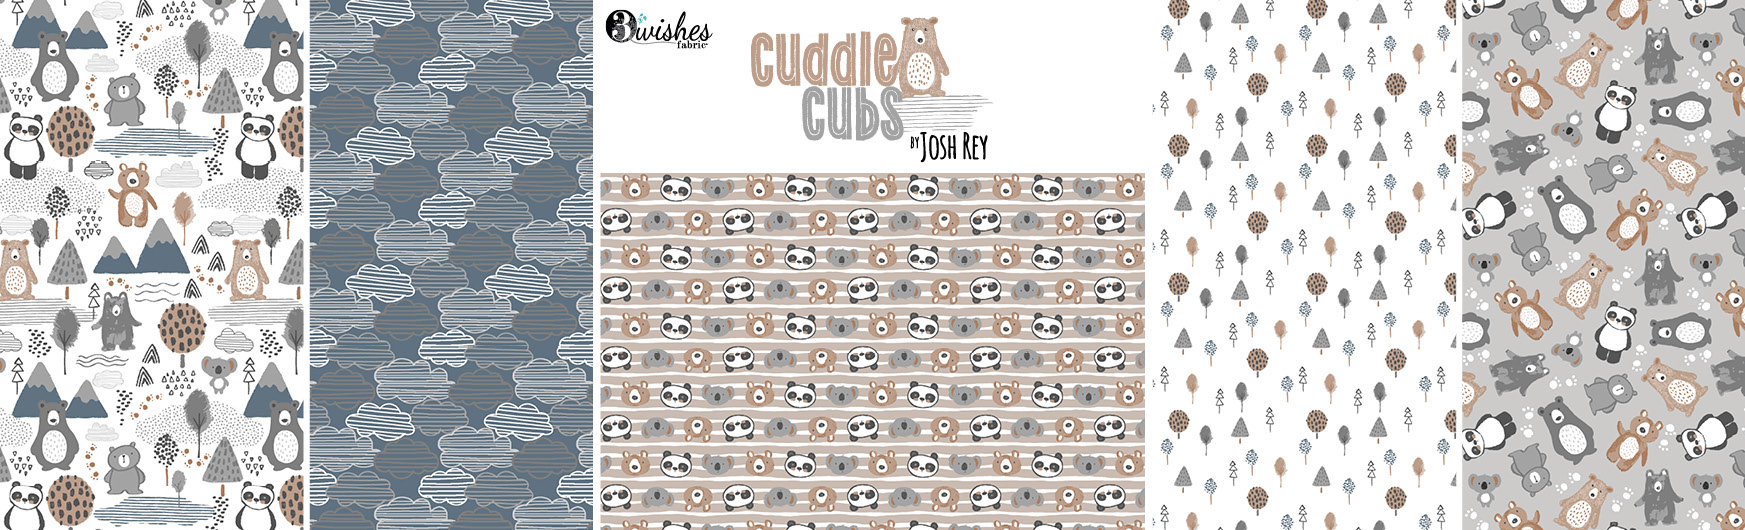 Cuddle Cubs